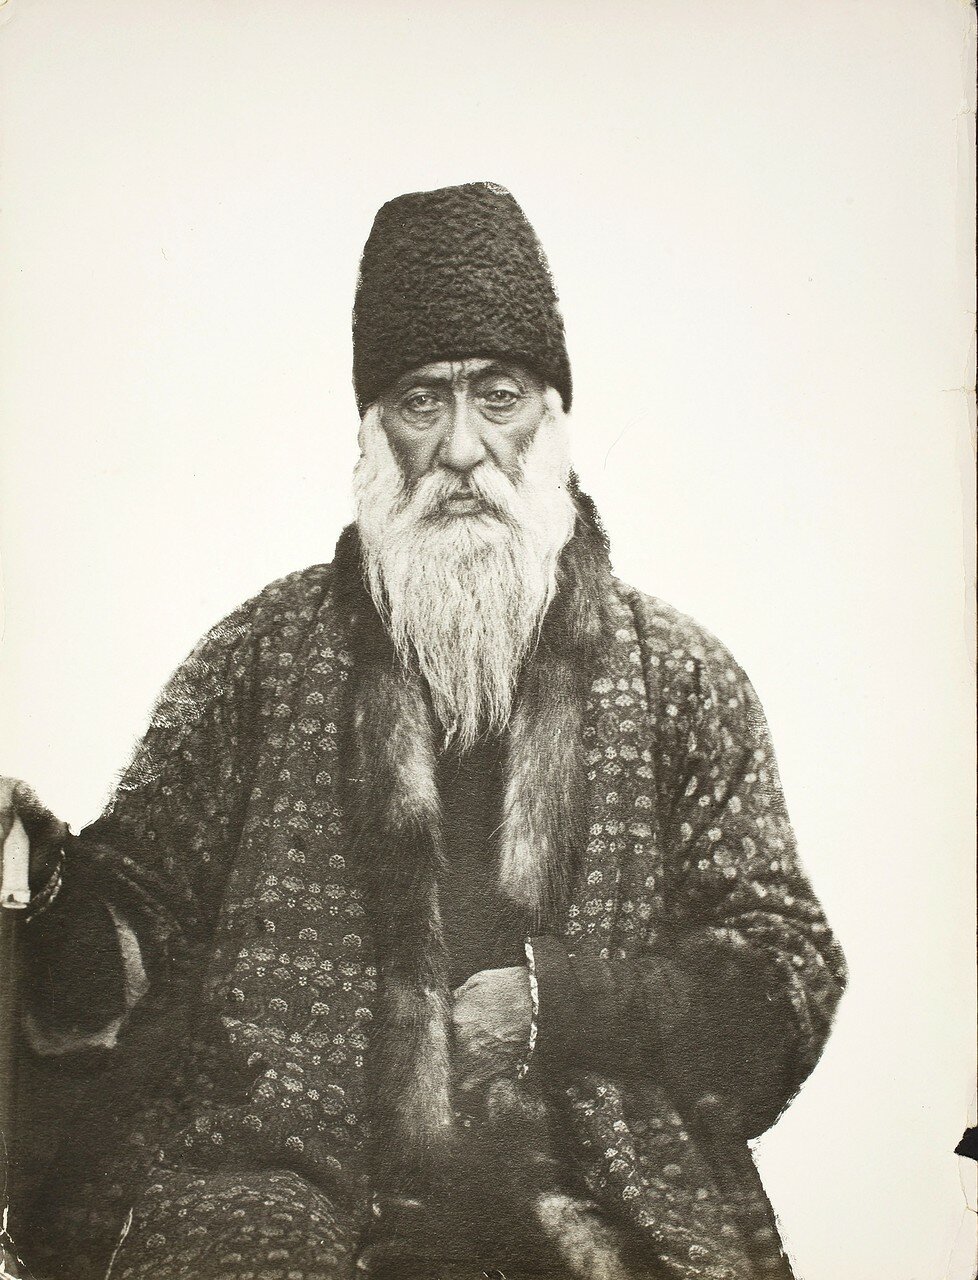 Мирза Юсуф-хан Аштиани, садразам (великий везир) (1812-1885)